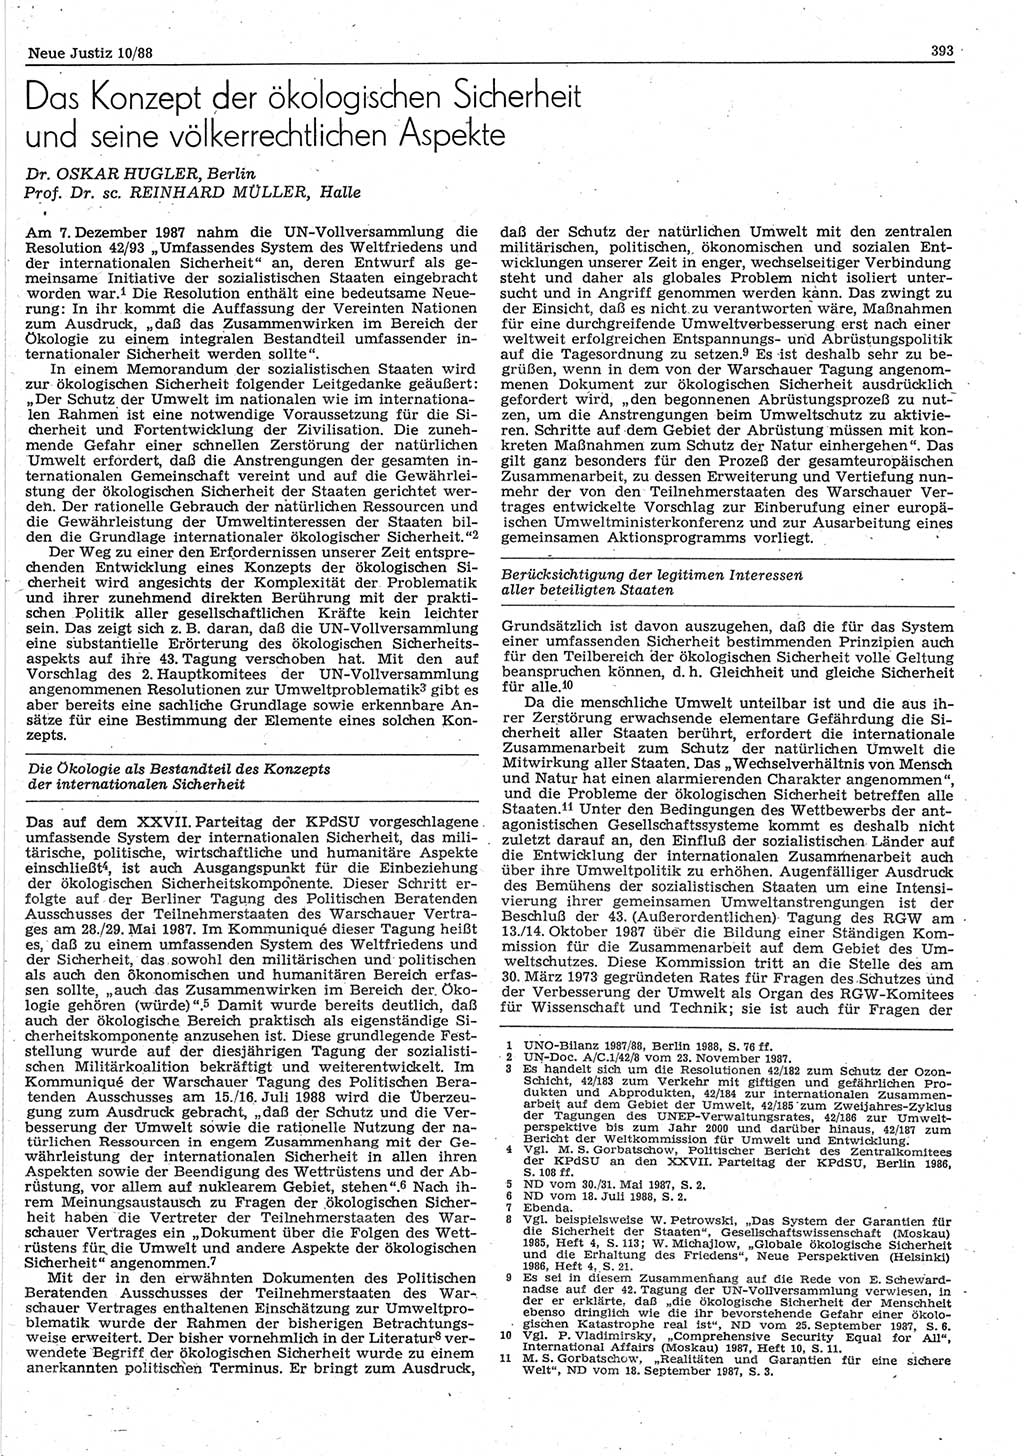 Neue Justiz (NJ), Zeitschrift für sozialistisches Recht und Gesetzlichkeit [Deutsche Demokratische Republik (DDR)], 42. Jahrgang 1988, Seite 393 (NJ DDR 1988, S. 393)